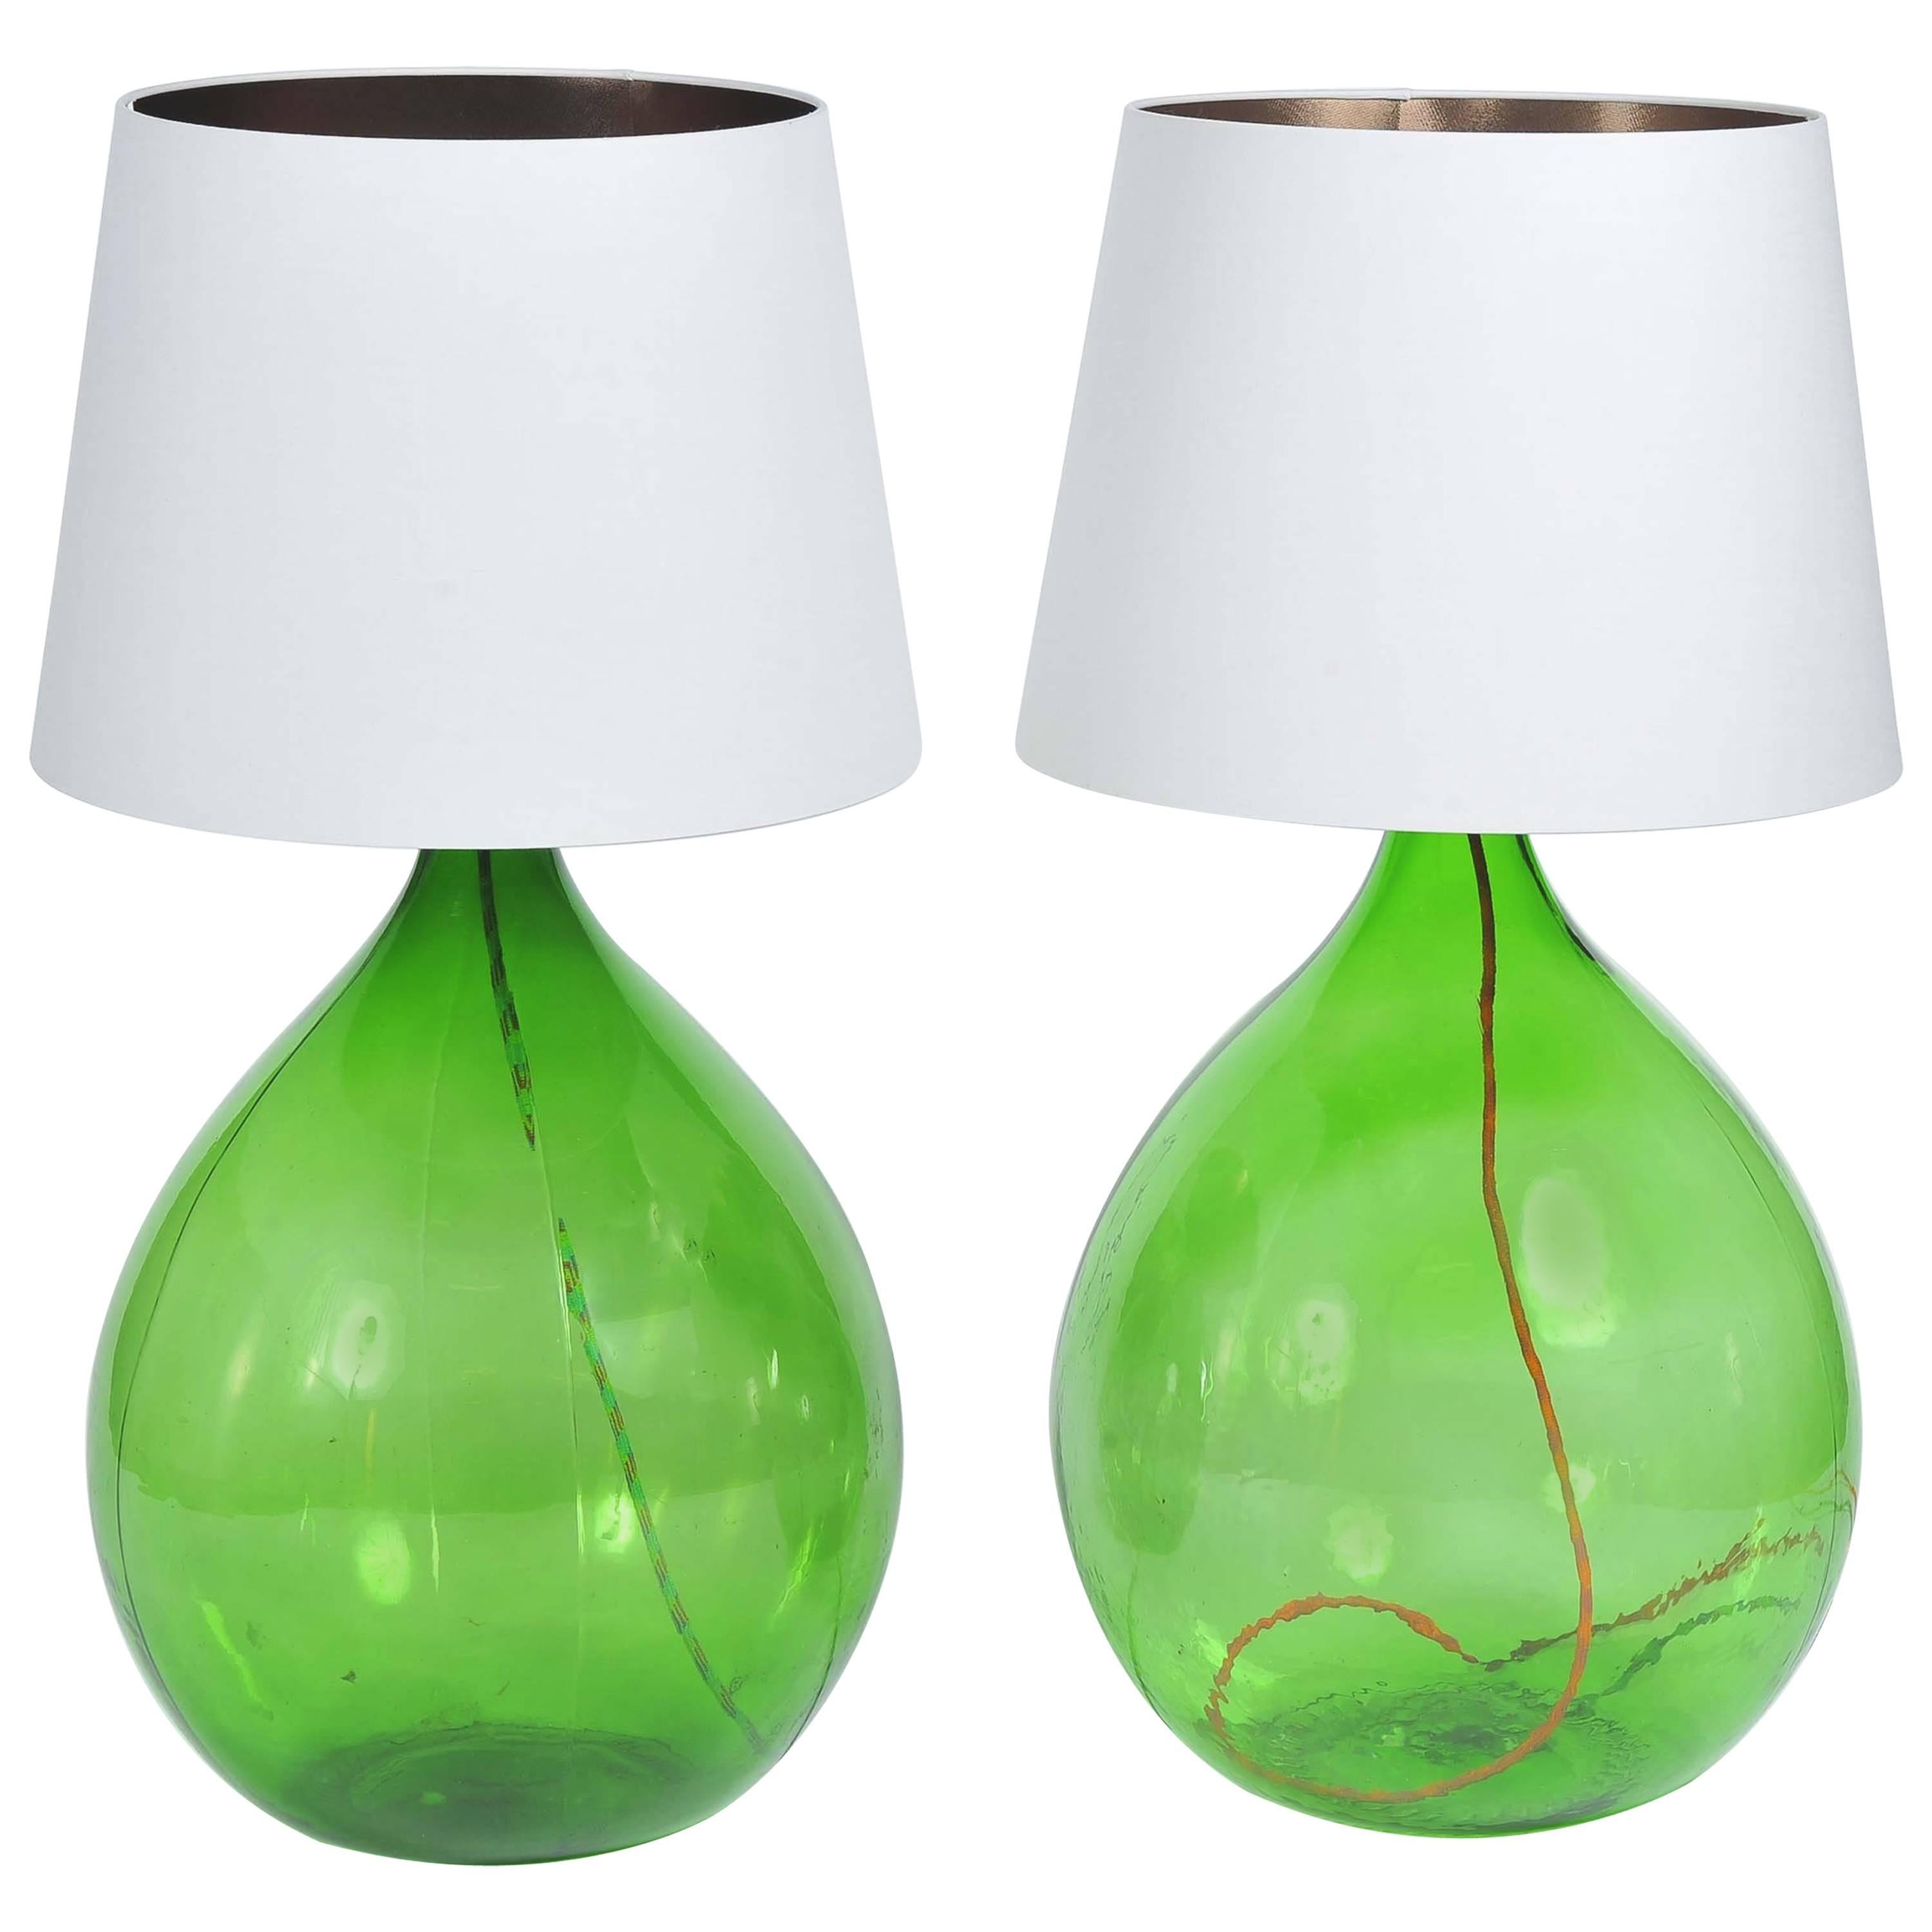 Pair of Vintage Handmade Green Demijohn Glass Bottles Table/Floor Lamps